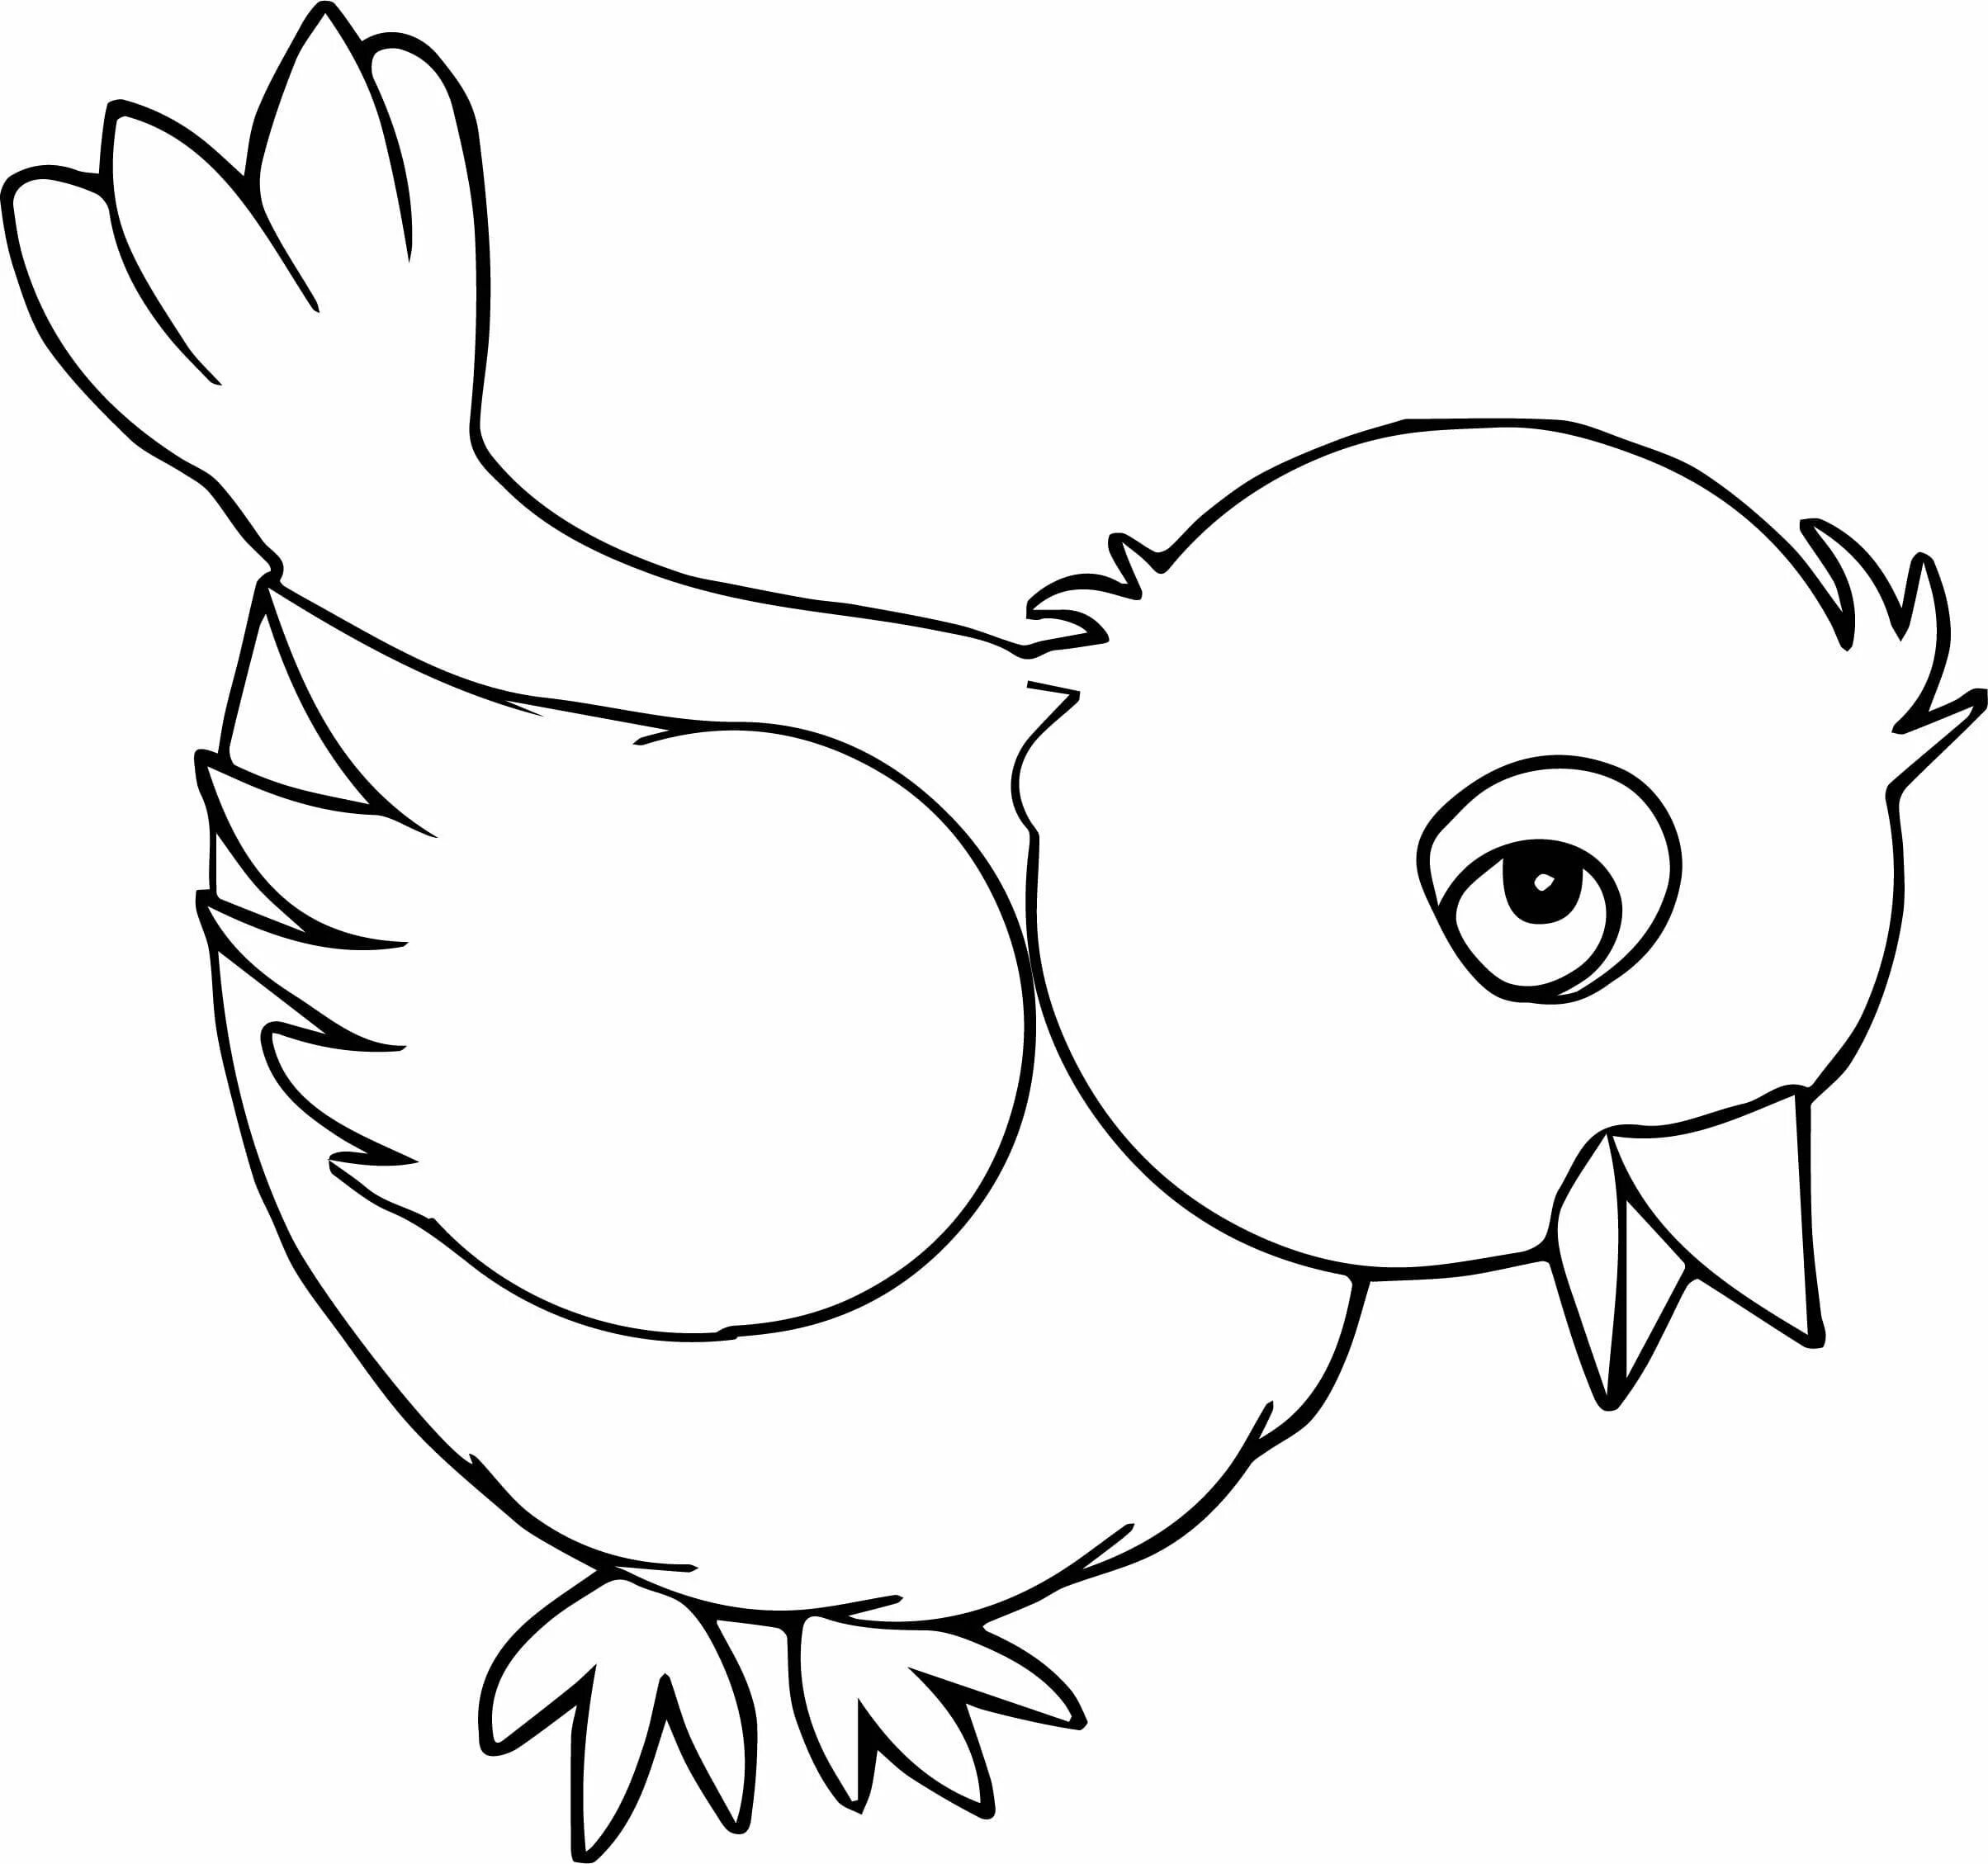 Распечатать картинку птицы для детей. Раскраска для малышей. Птицы. Птицы раскраска для детей. Птичка раскраска для детей. Воробей раскраска для детей.